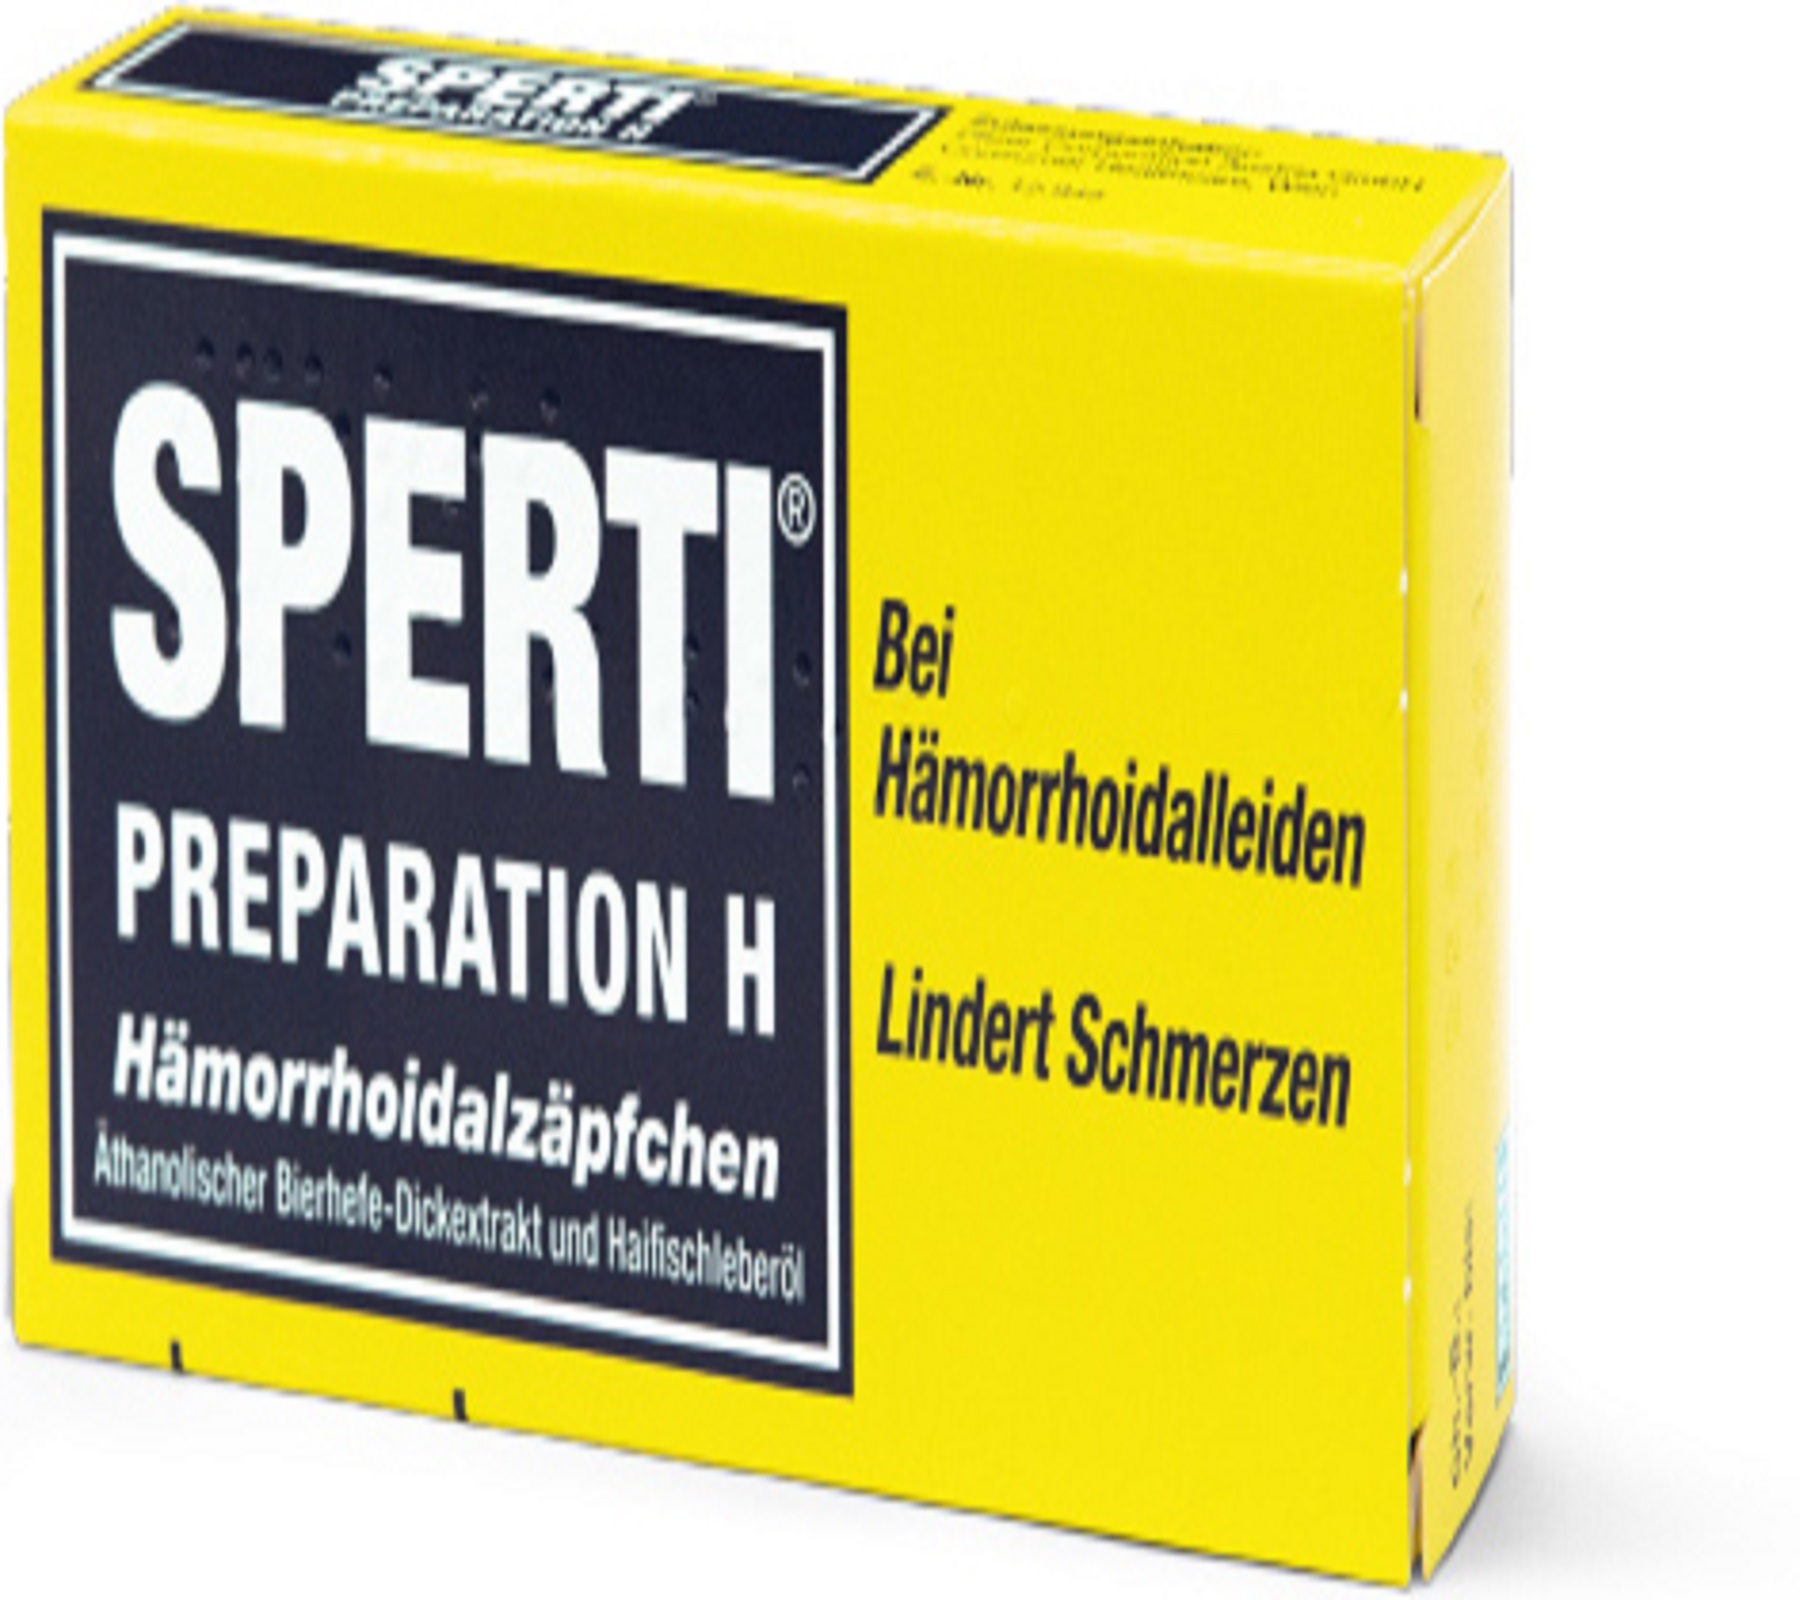 Sperti Preparation H - Hämorrhoidalzäpfchen